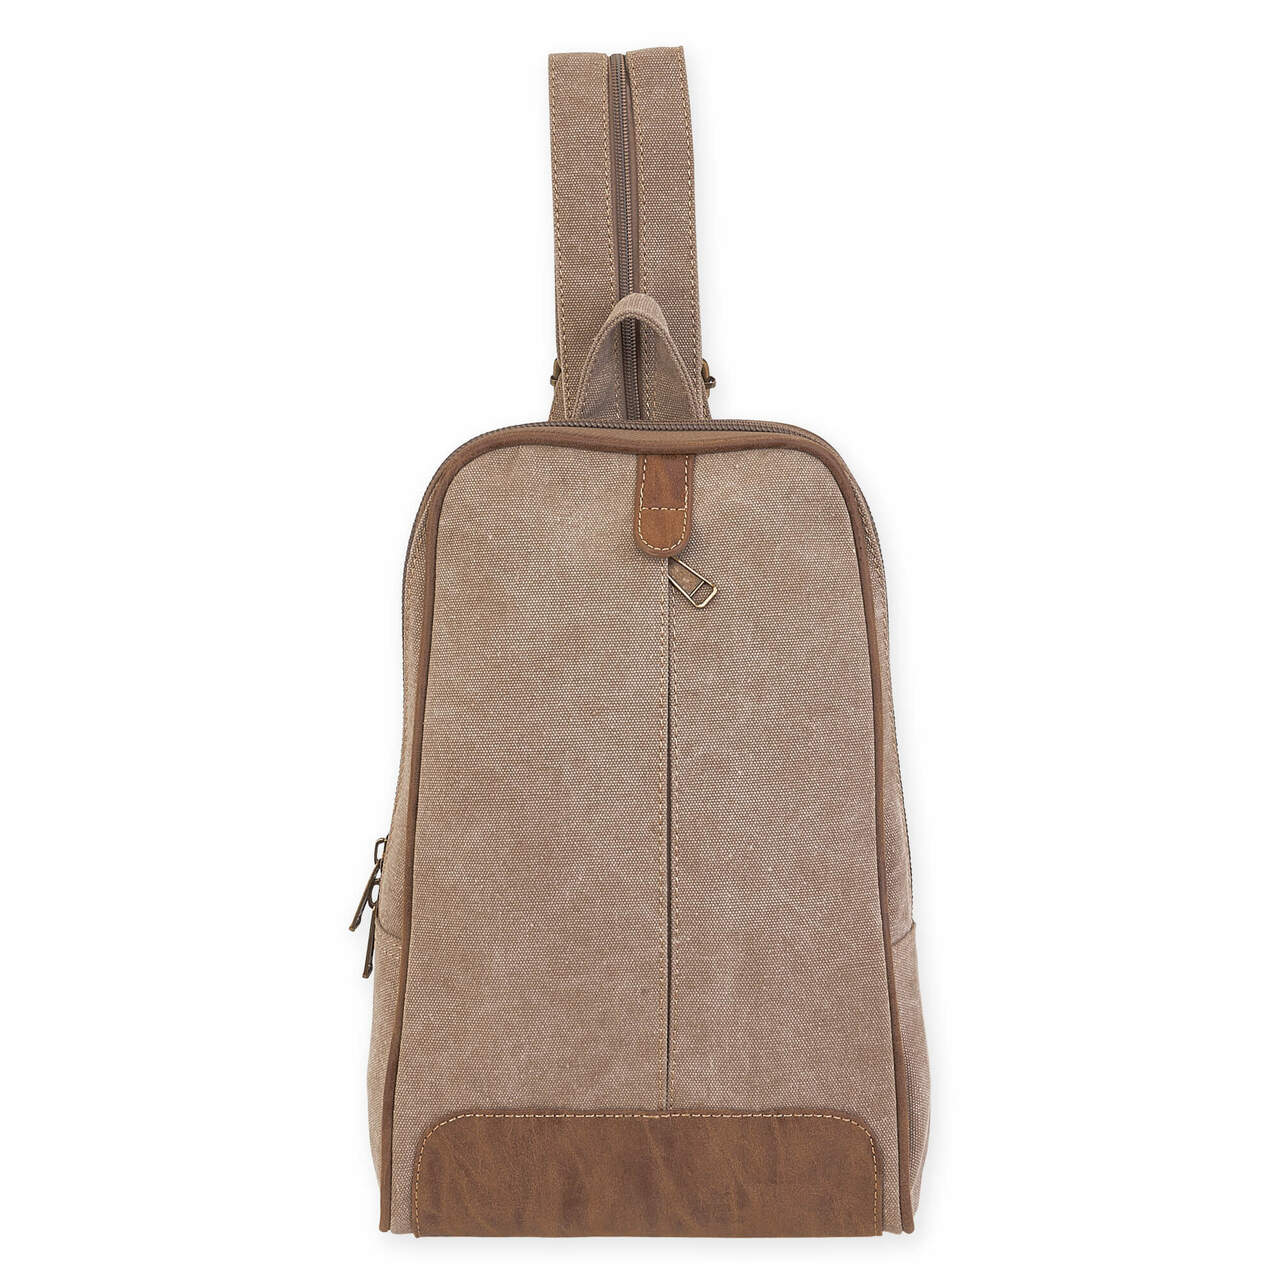 Washed Canvas Khaki Leather Sling/Backpack